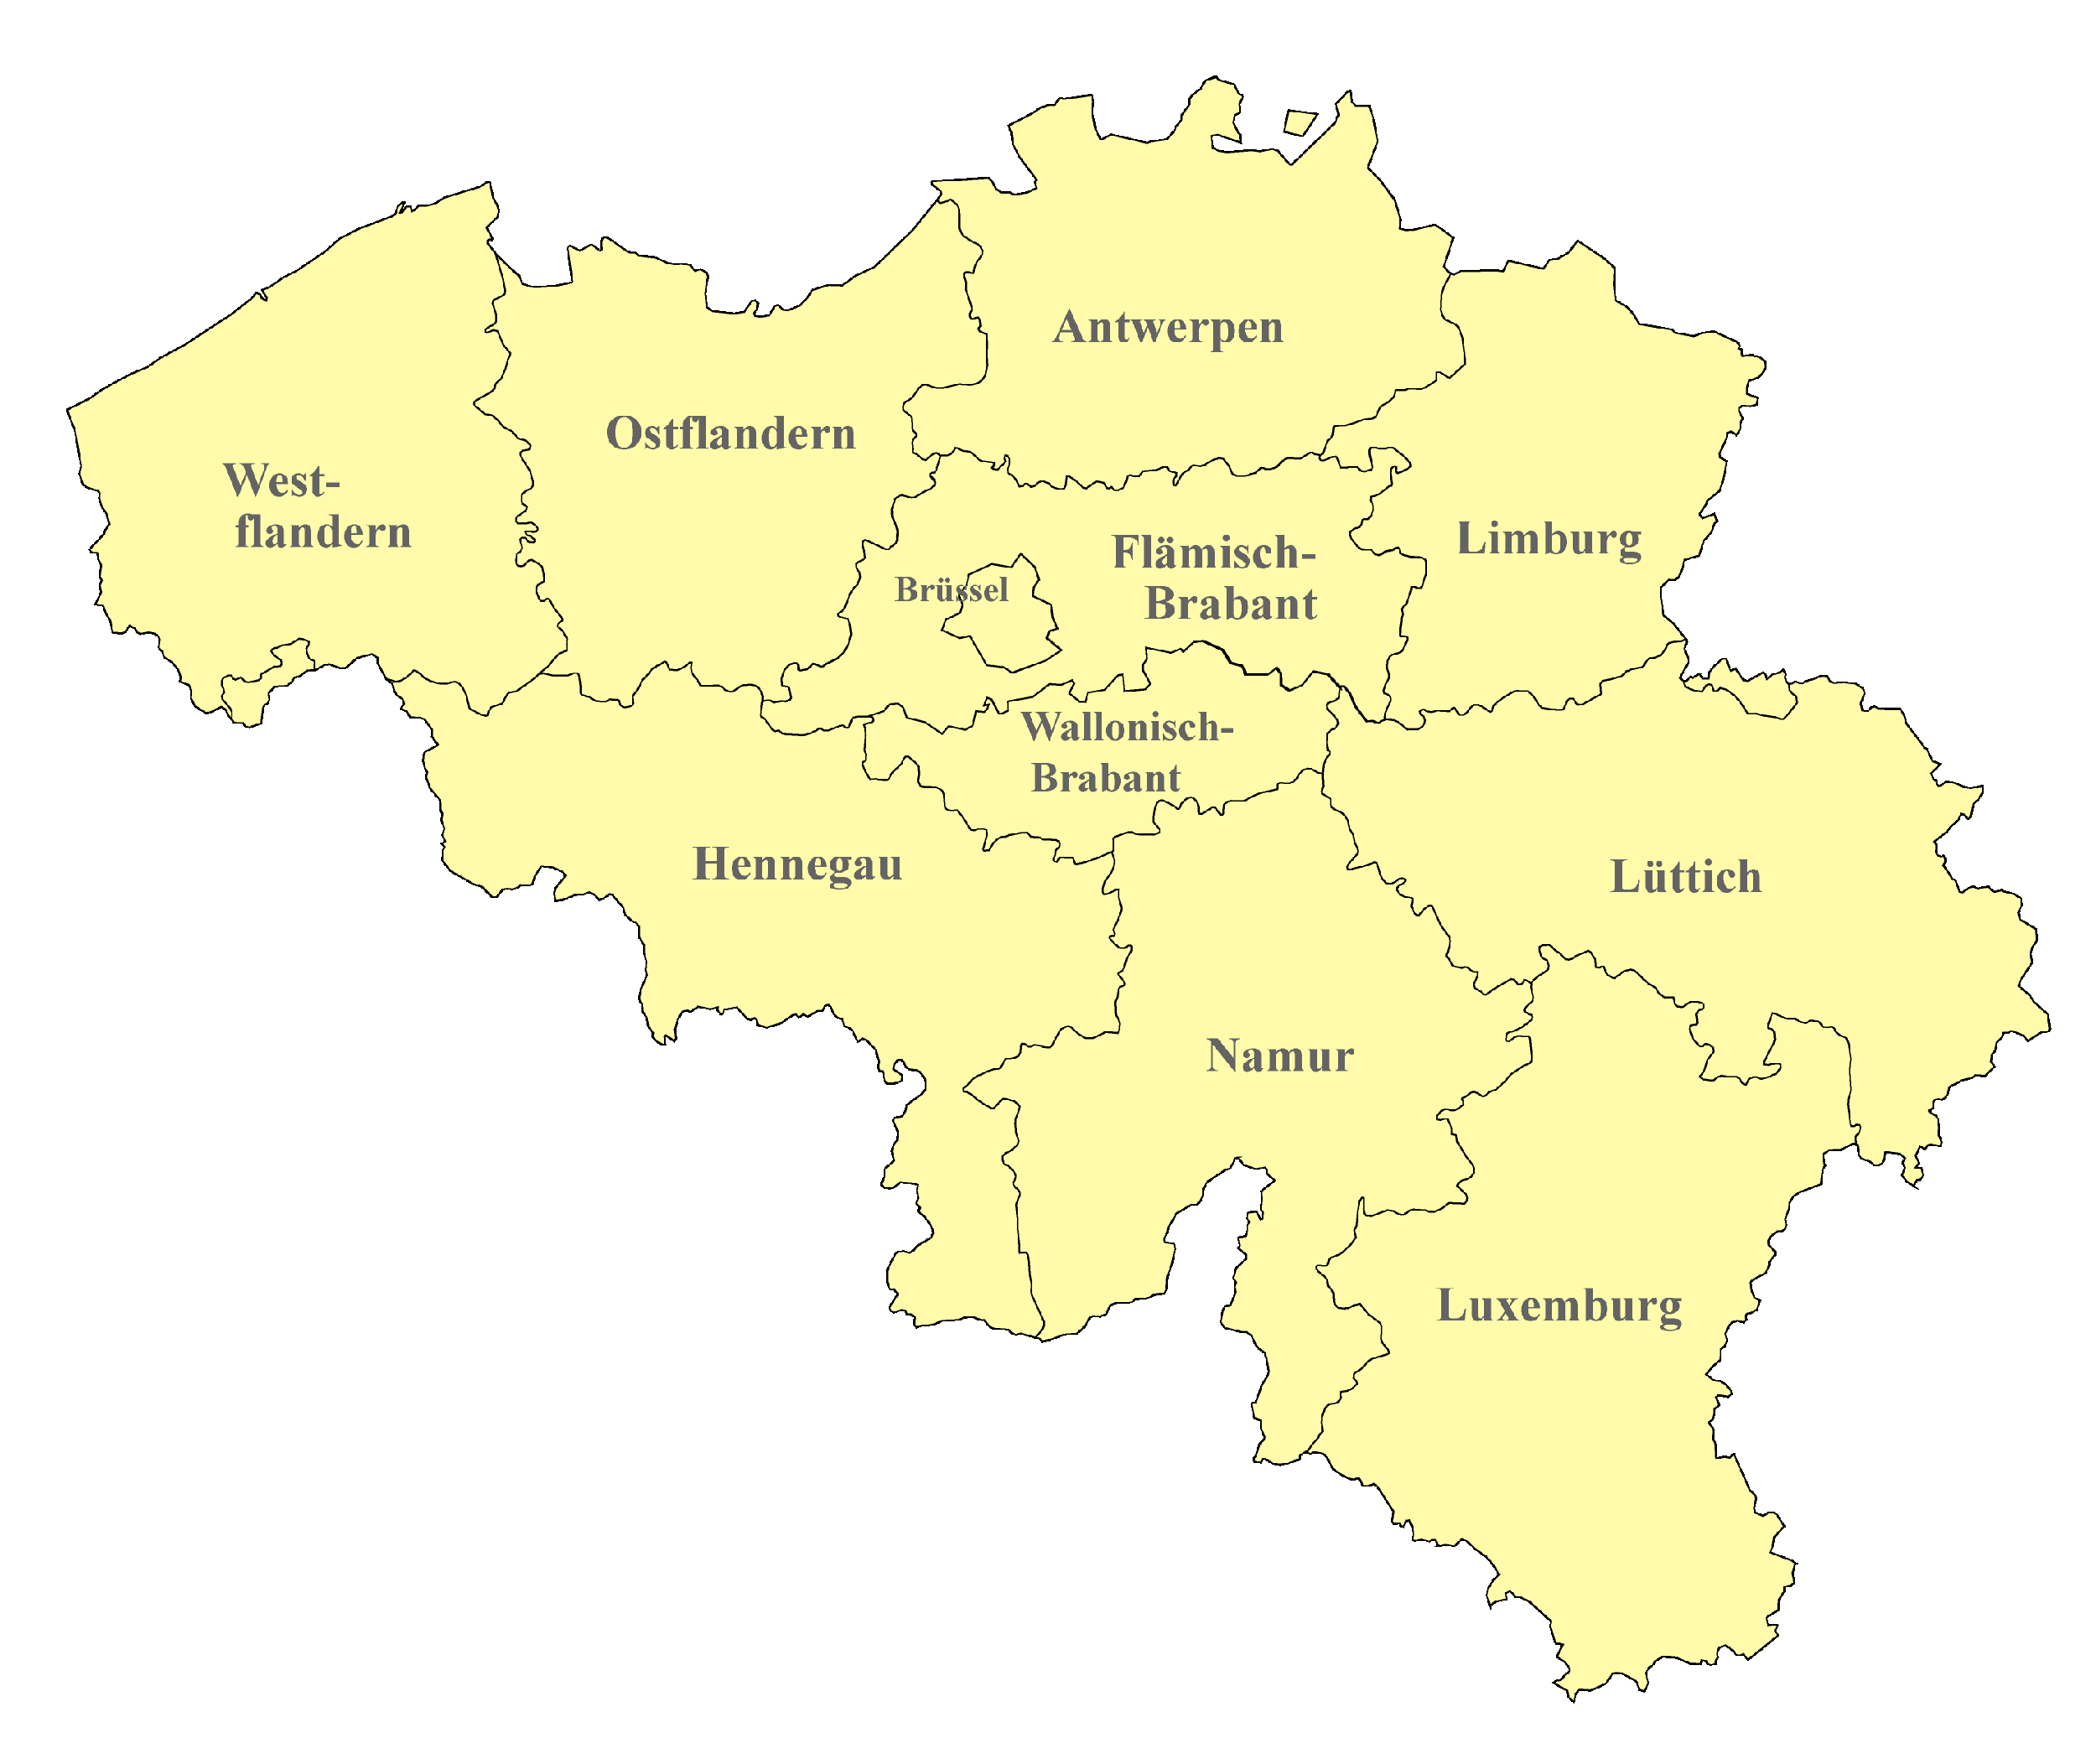 Belgien-Karte nach Regionen gegliedert